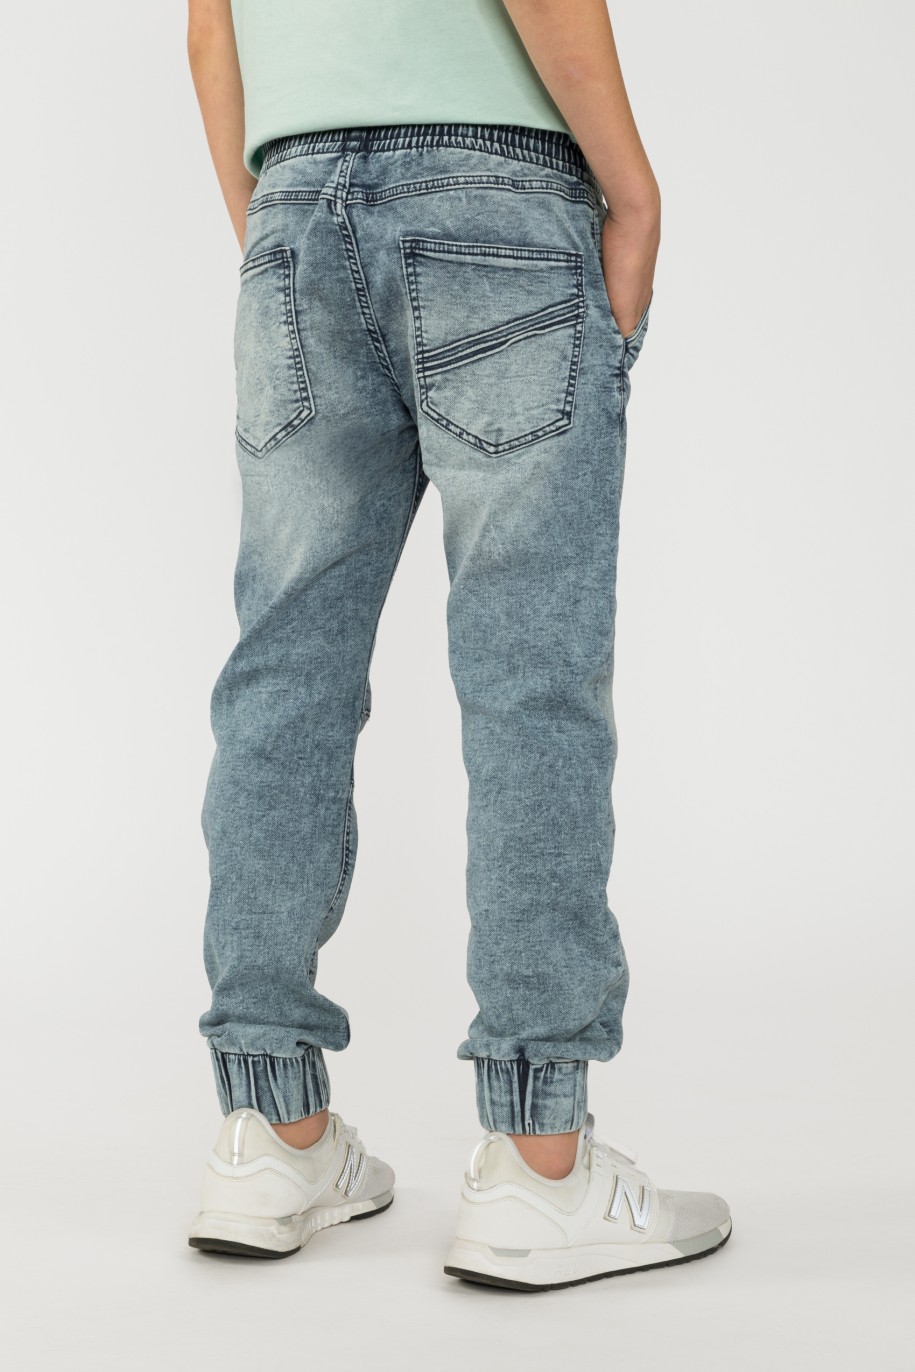 Jeansowe granatowe joggery dla chłopaka z modnymi przetarciami - 32950